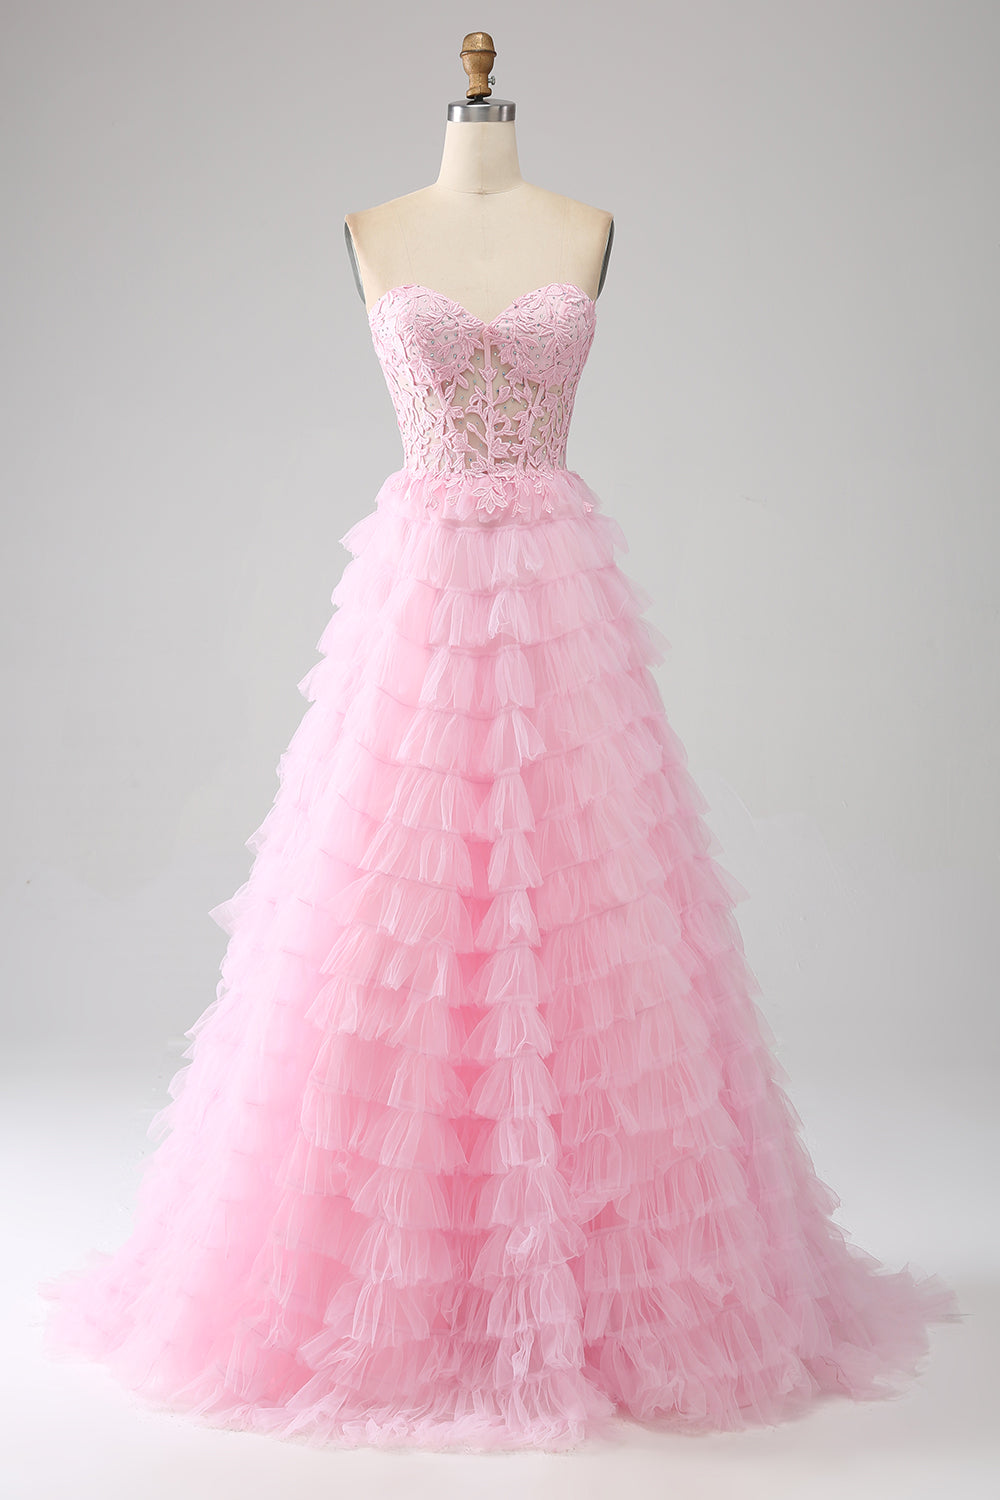 Fashion Celebrity Dresses | Formal Celebrity Dresses | Pink Celebrity  Dresses - D08 - Aliexpress